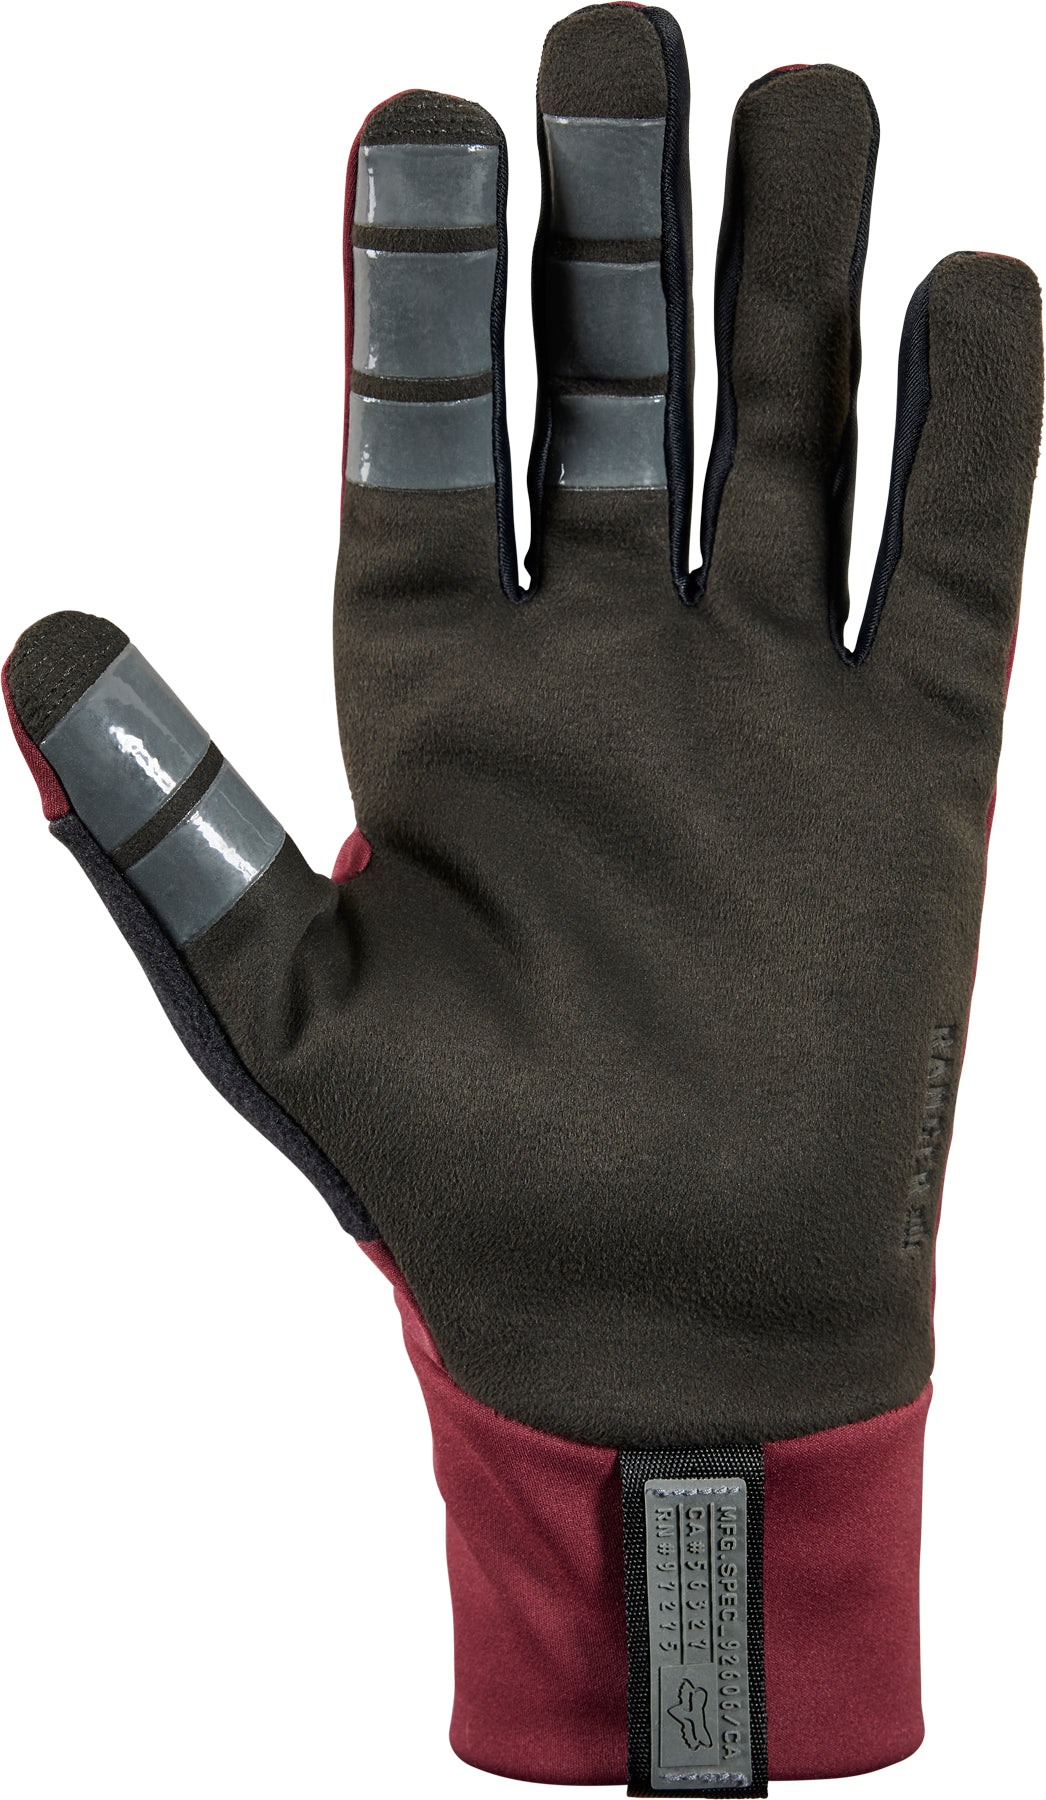 Ranger Fire Glove - Fox